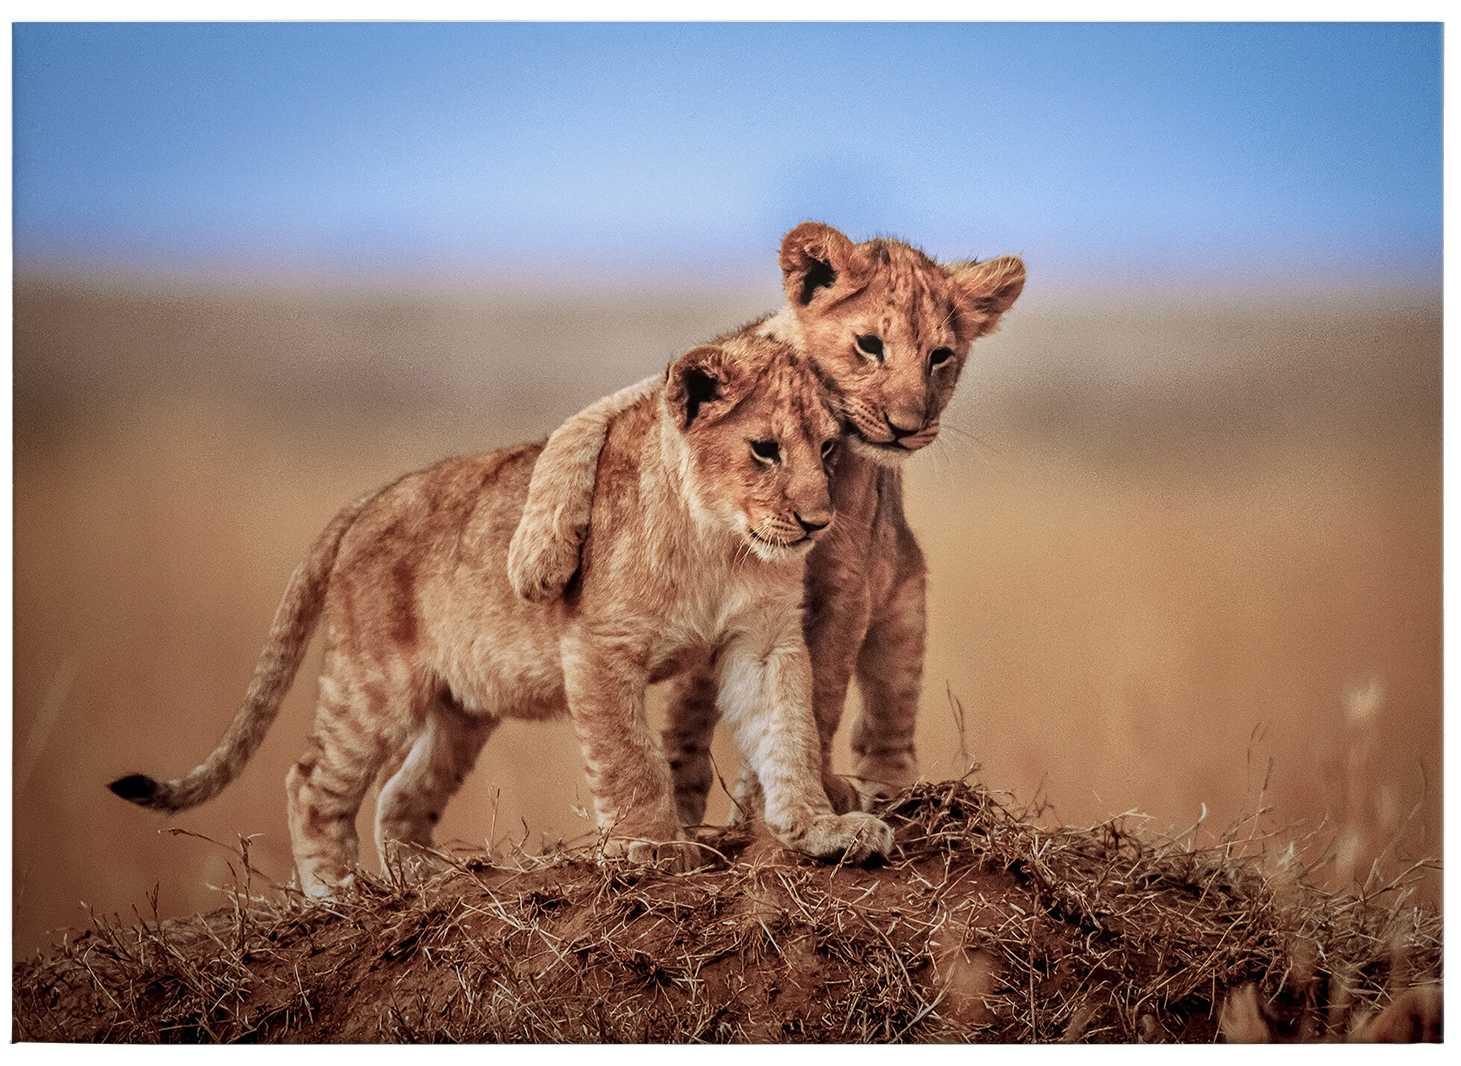             Leinwandbild Löwen Kinder in der Natur – 0,70 m x 0,50 m
        